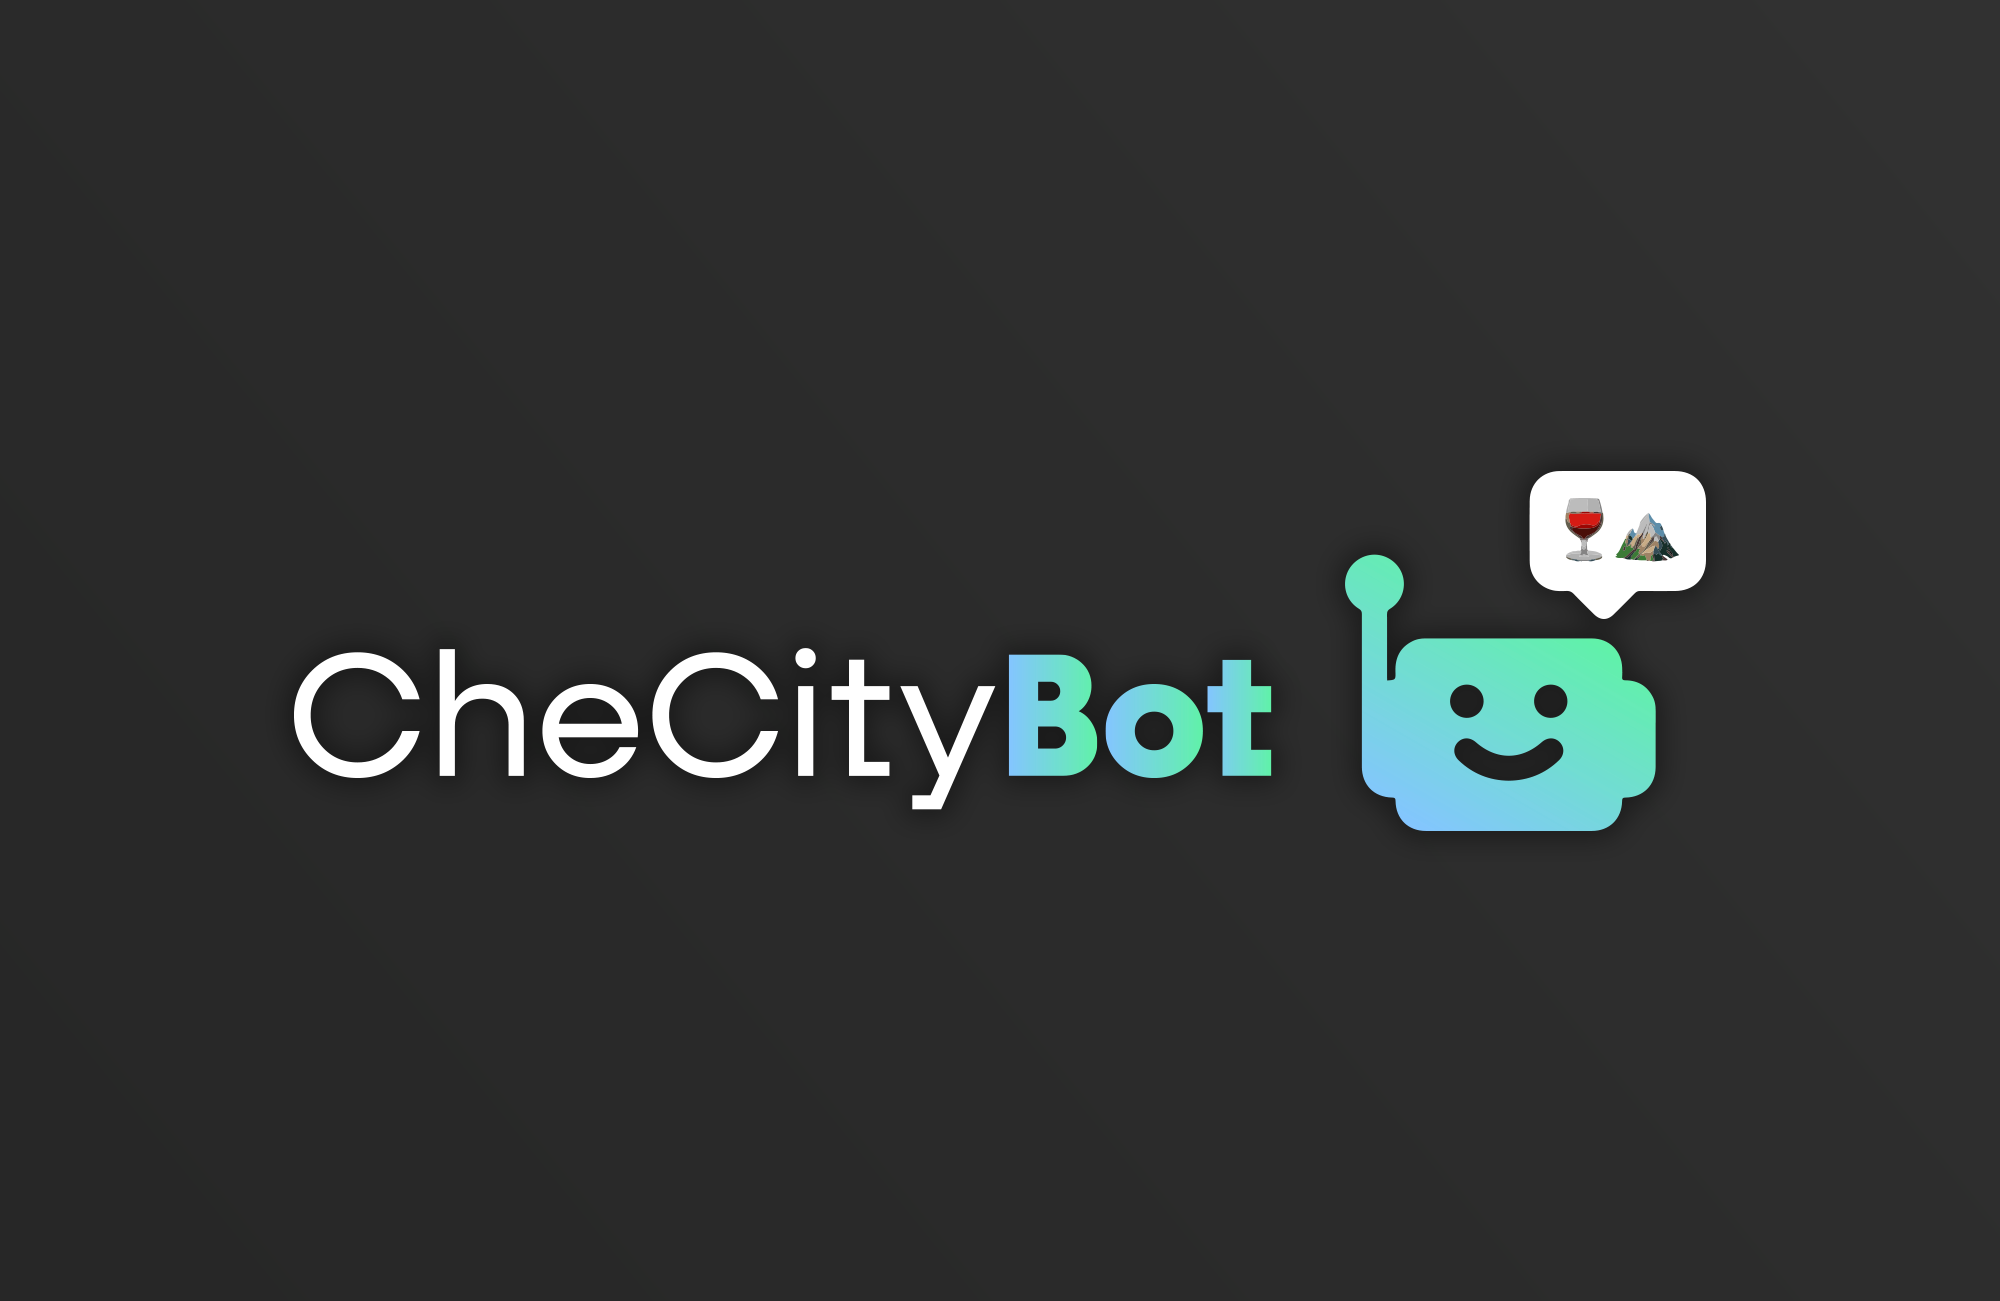 CheCityBot